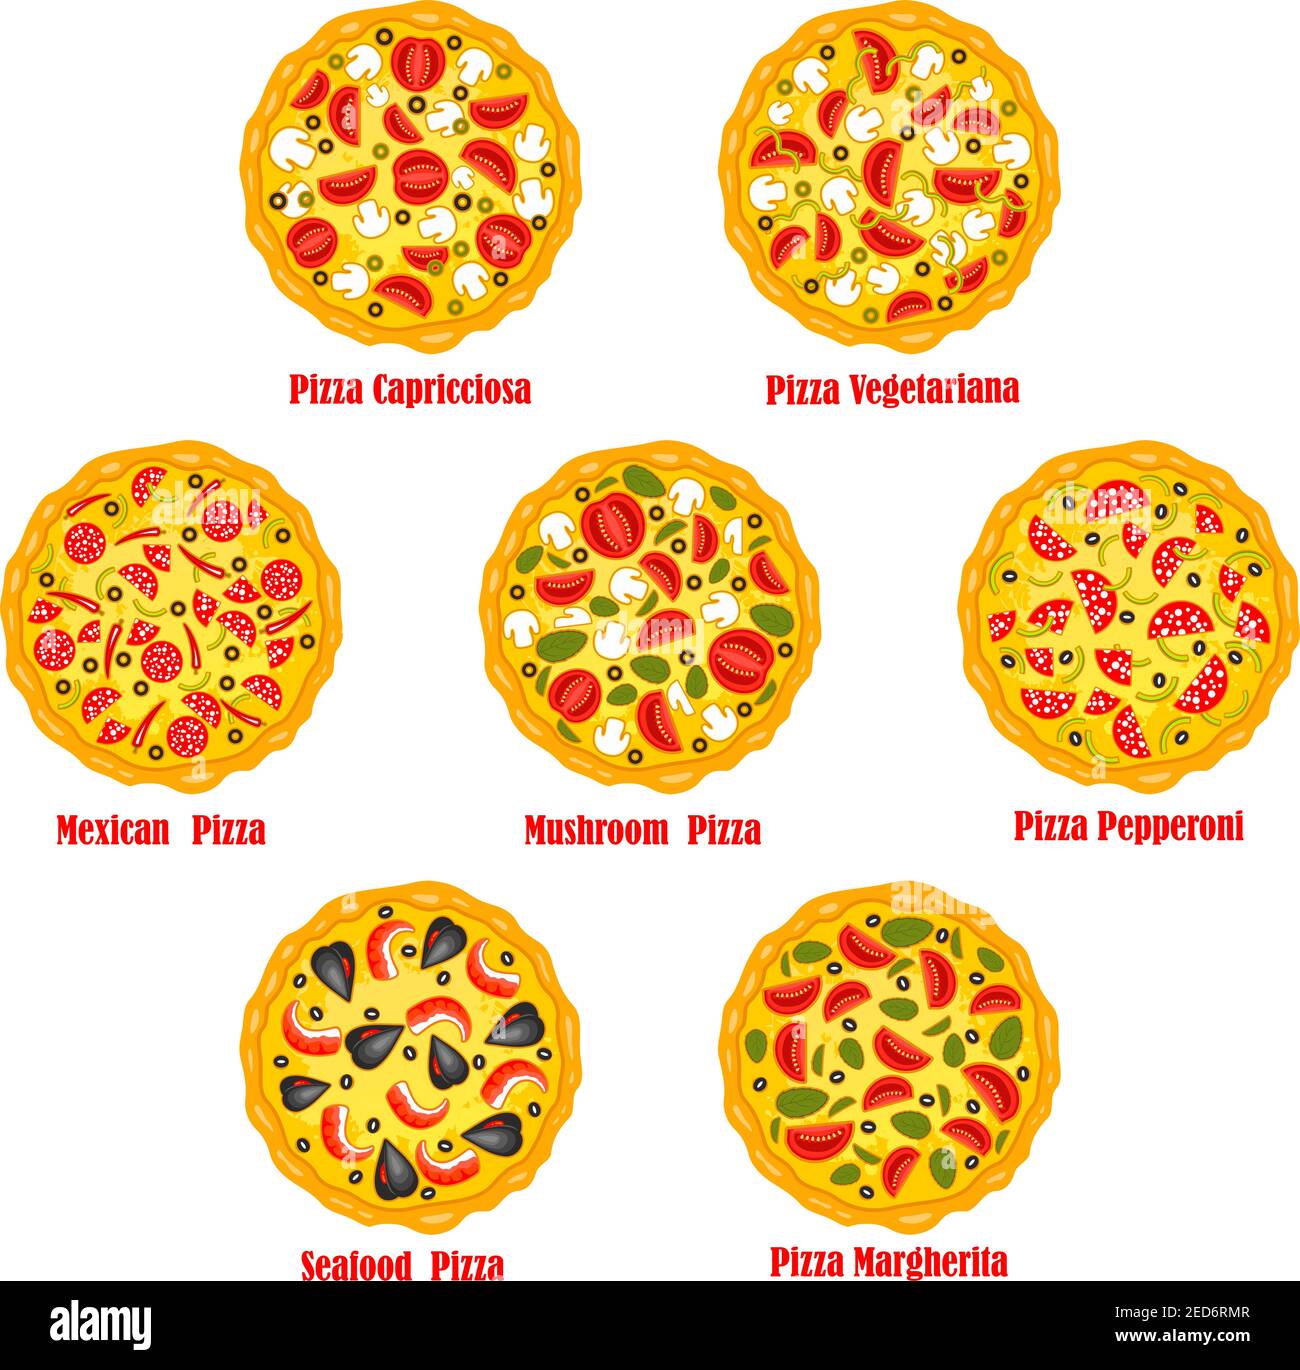 технологическая карта приготовления пиццы пепперони фото 20